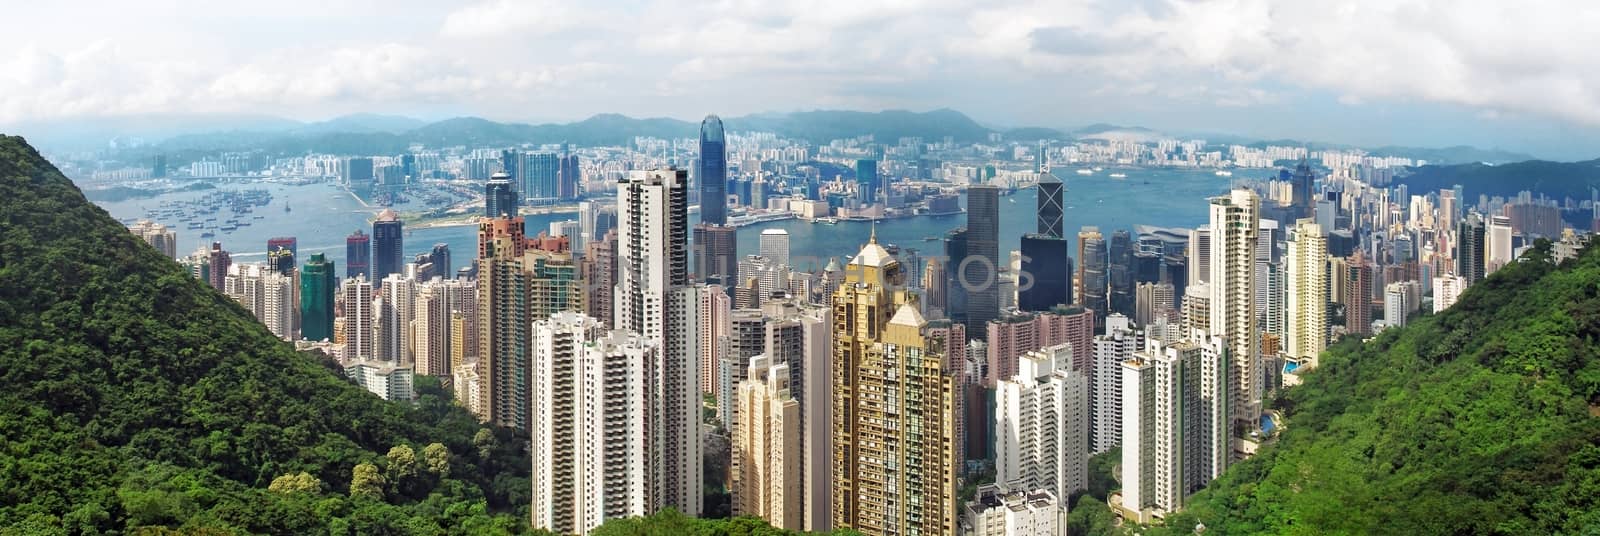 Hong Kong panorama by Vectorex